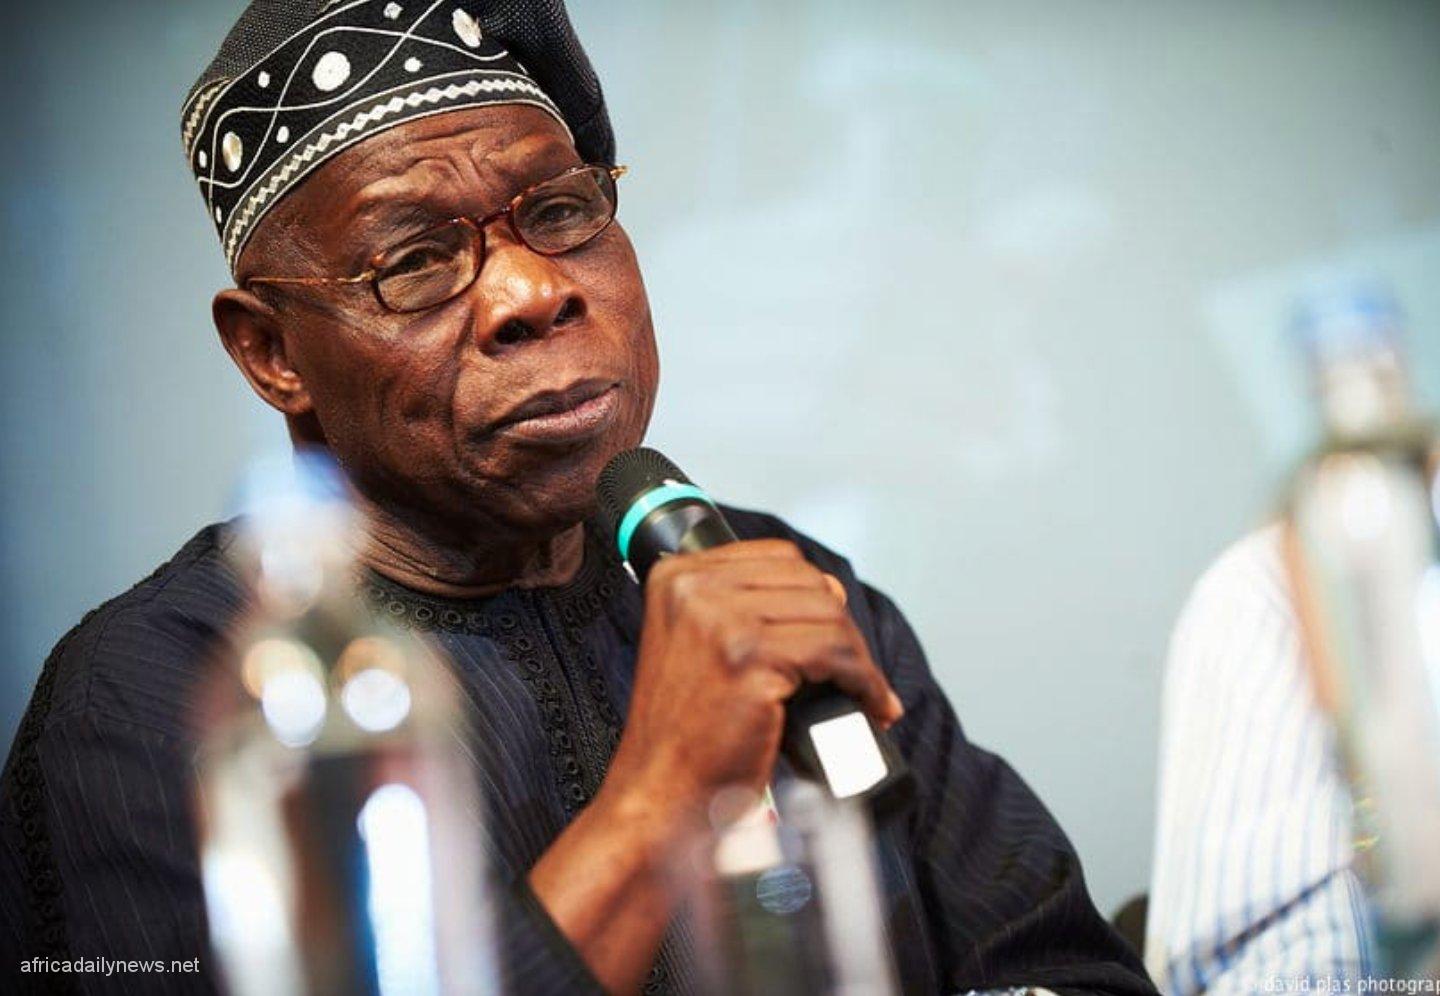 2023 May Make Or Break Nigeria – Obasanjo